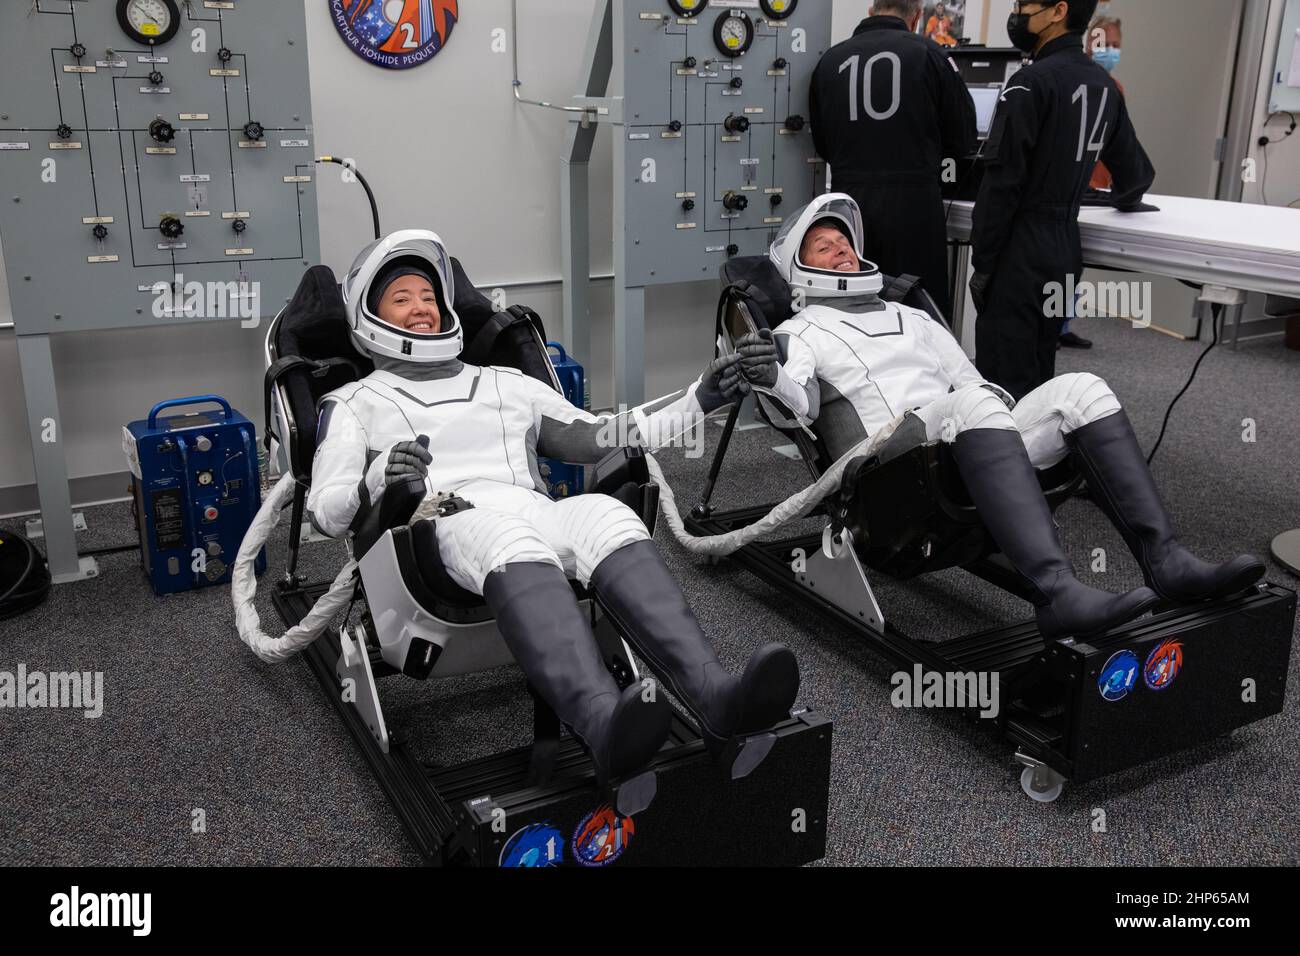 Die NASA-Astronauten Megan McArthur, links, und Shane Kimbrough sitzen am 23. April 2021 im Anzugraum der Besatzung im Neil Armstrong Operations and Checkout Building im Kennedy Space Center der NASA in Florida. McArthur und Kimbrough werden zusammen mit dem ESA-Astronauten Thomas Pesquet und dem JAXA-Astronauten Akihiko Hoshide auf der NASA-Mission SpaceX Crew-2 zur Internationalen Raumstation aufsteigen. Die Crew Dragon Endeavour von SpaceX wird heute um 5:49 Uhr EDT auf der Falcon 9-Rakete des Unternehmens vom Kennedy Launch Complex 39A starten. Stockfoto